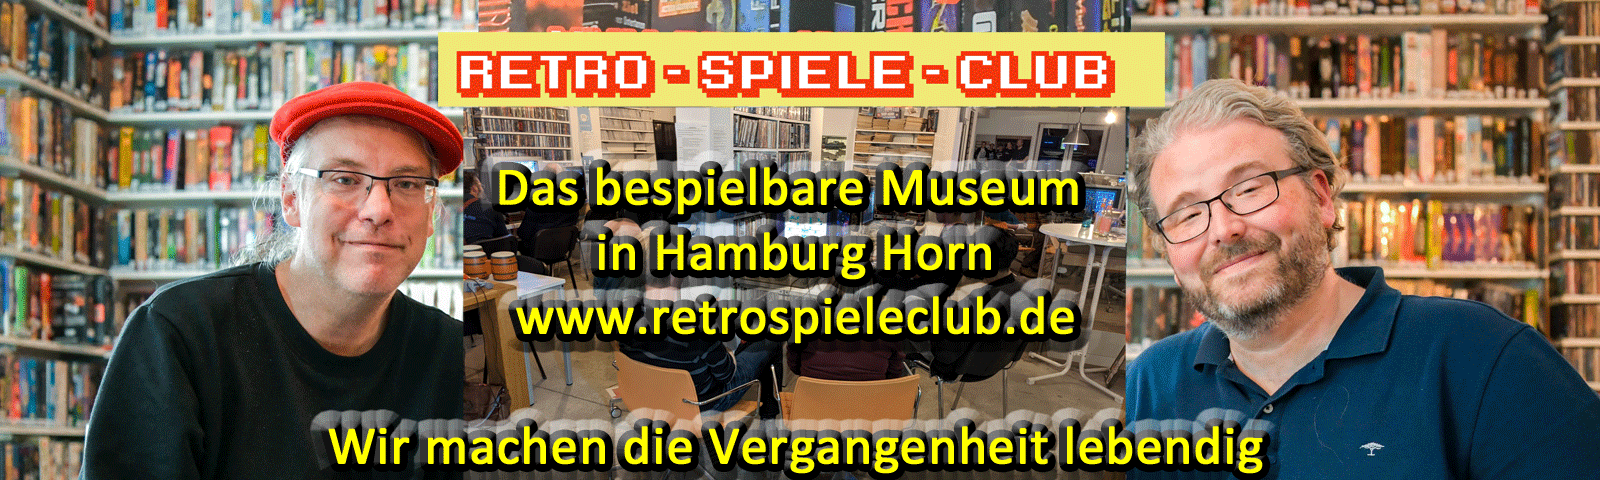 Unser Partner - Retro Spiele Club Hamburg Horn